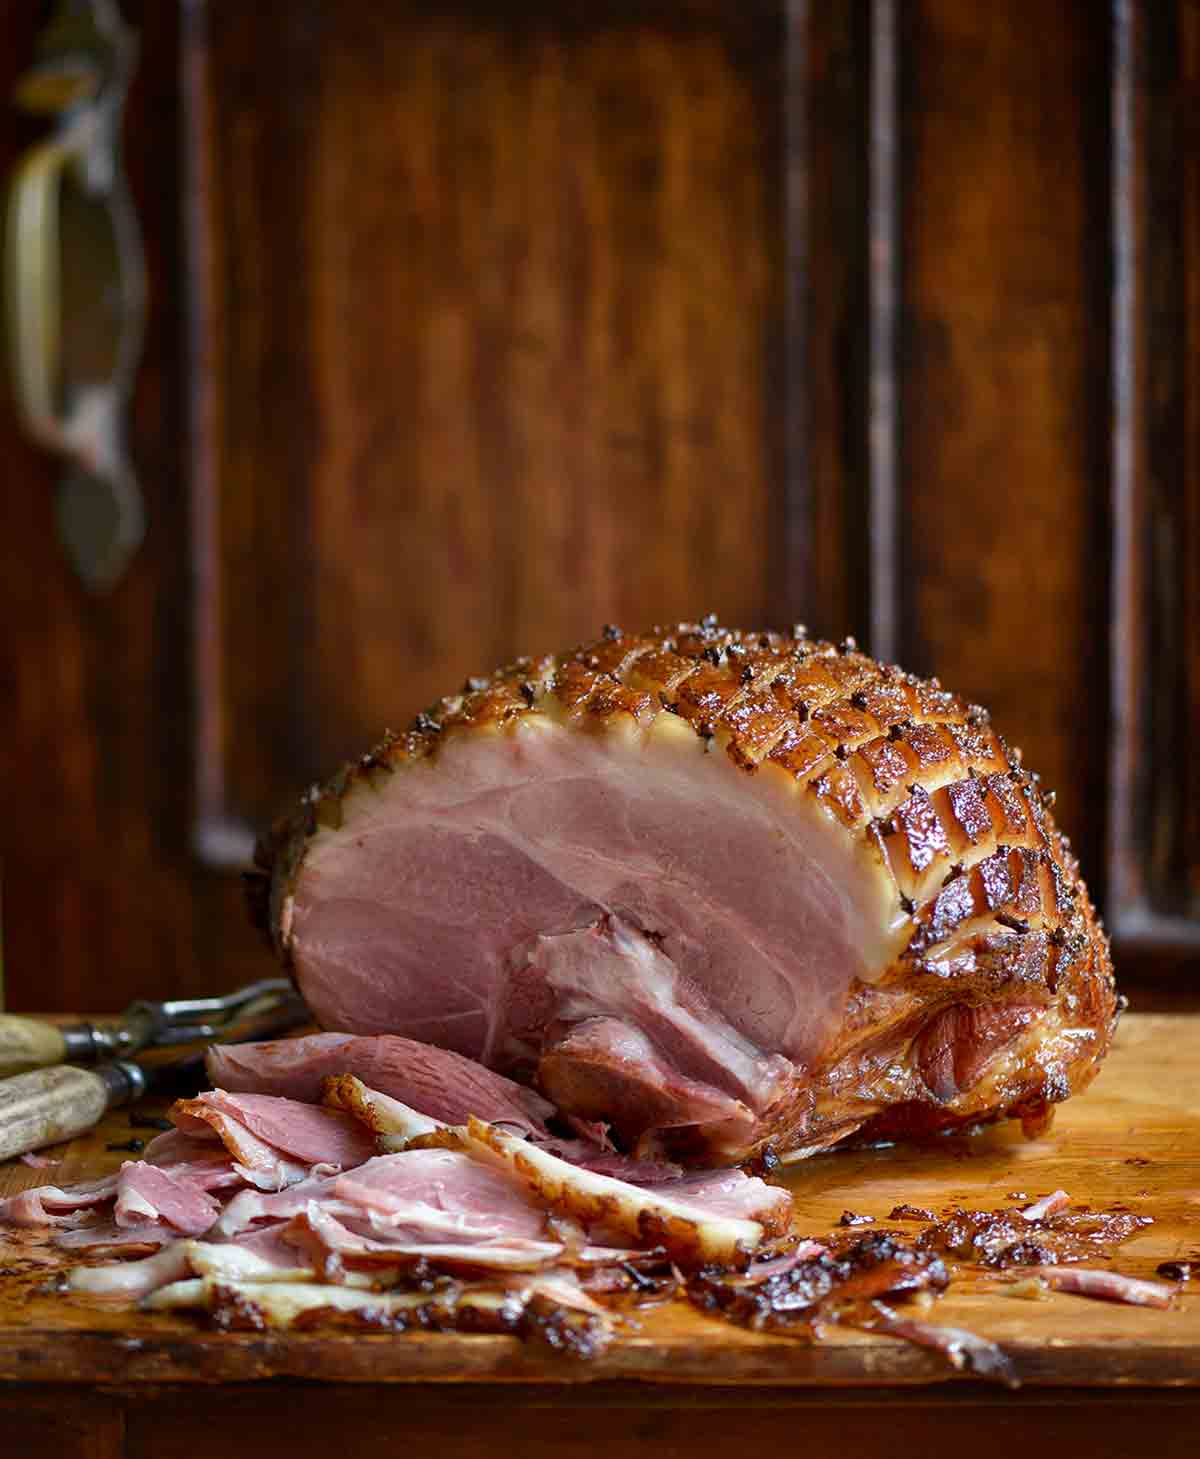 A mustard-glazed ham on a wooden cutting board.